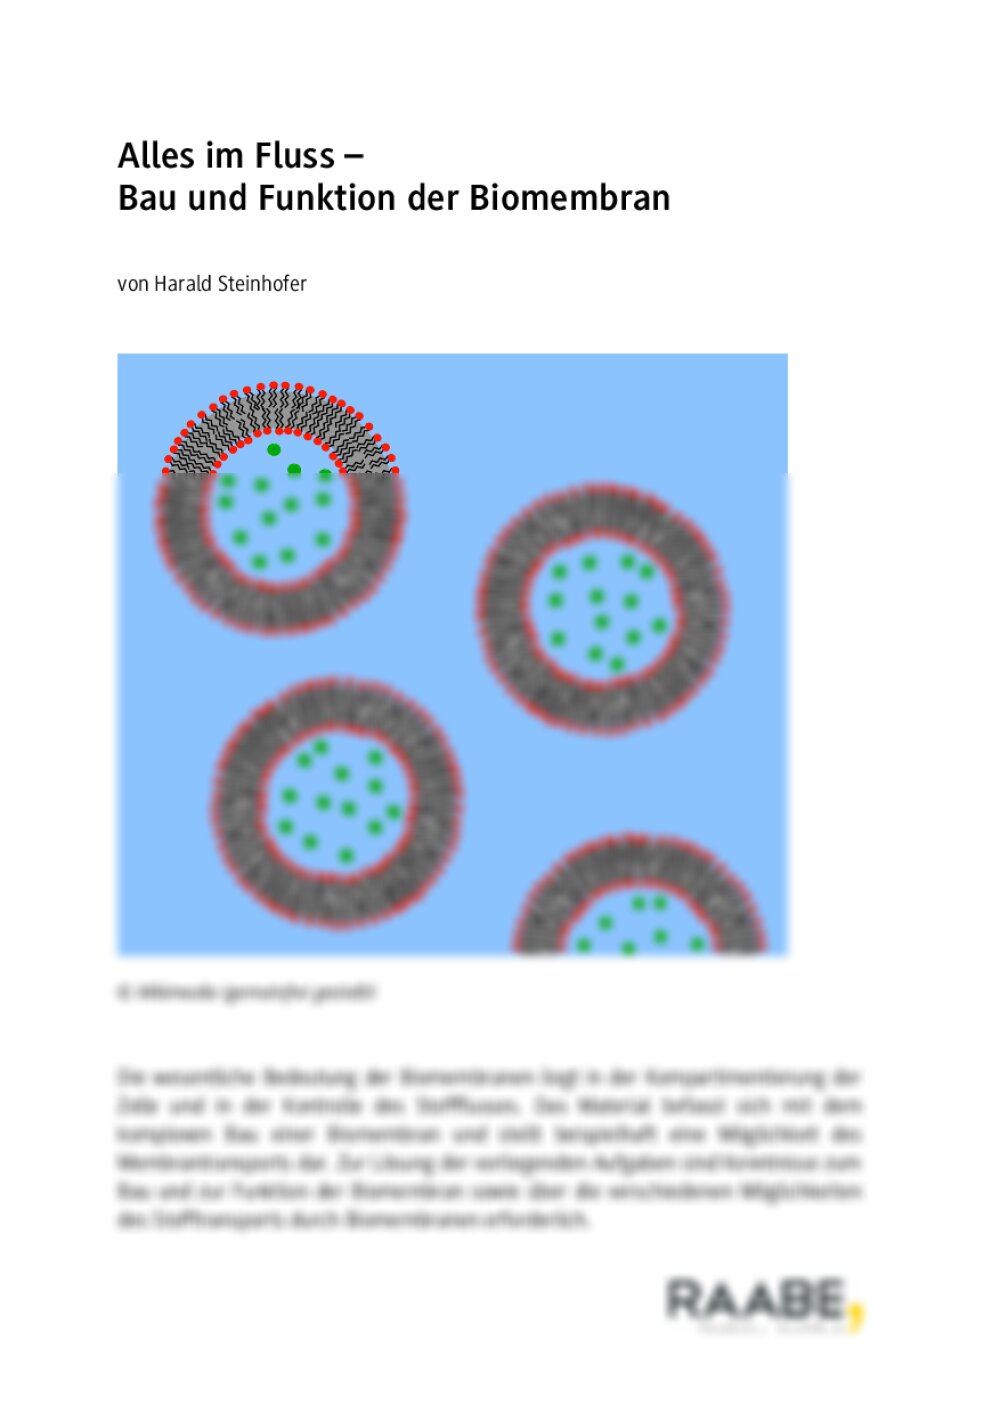 Bau und Funktion der Biomembran - Seite 1